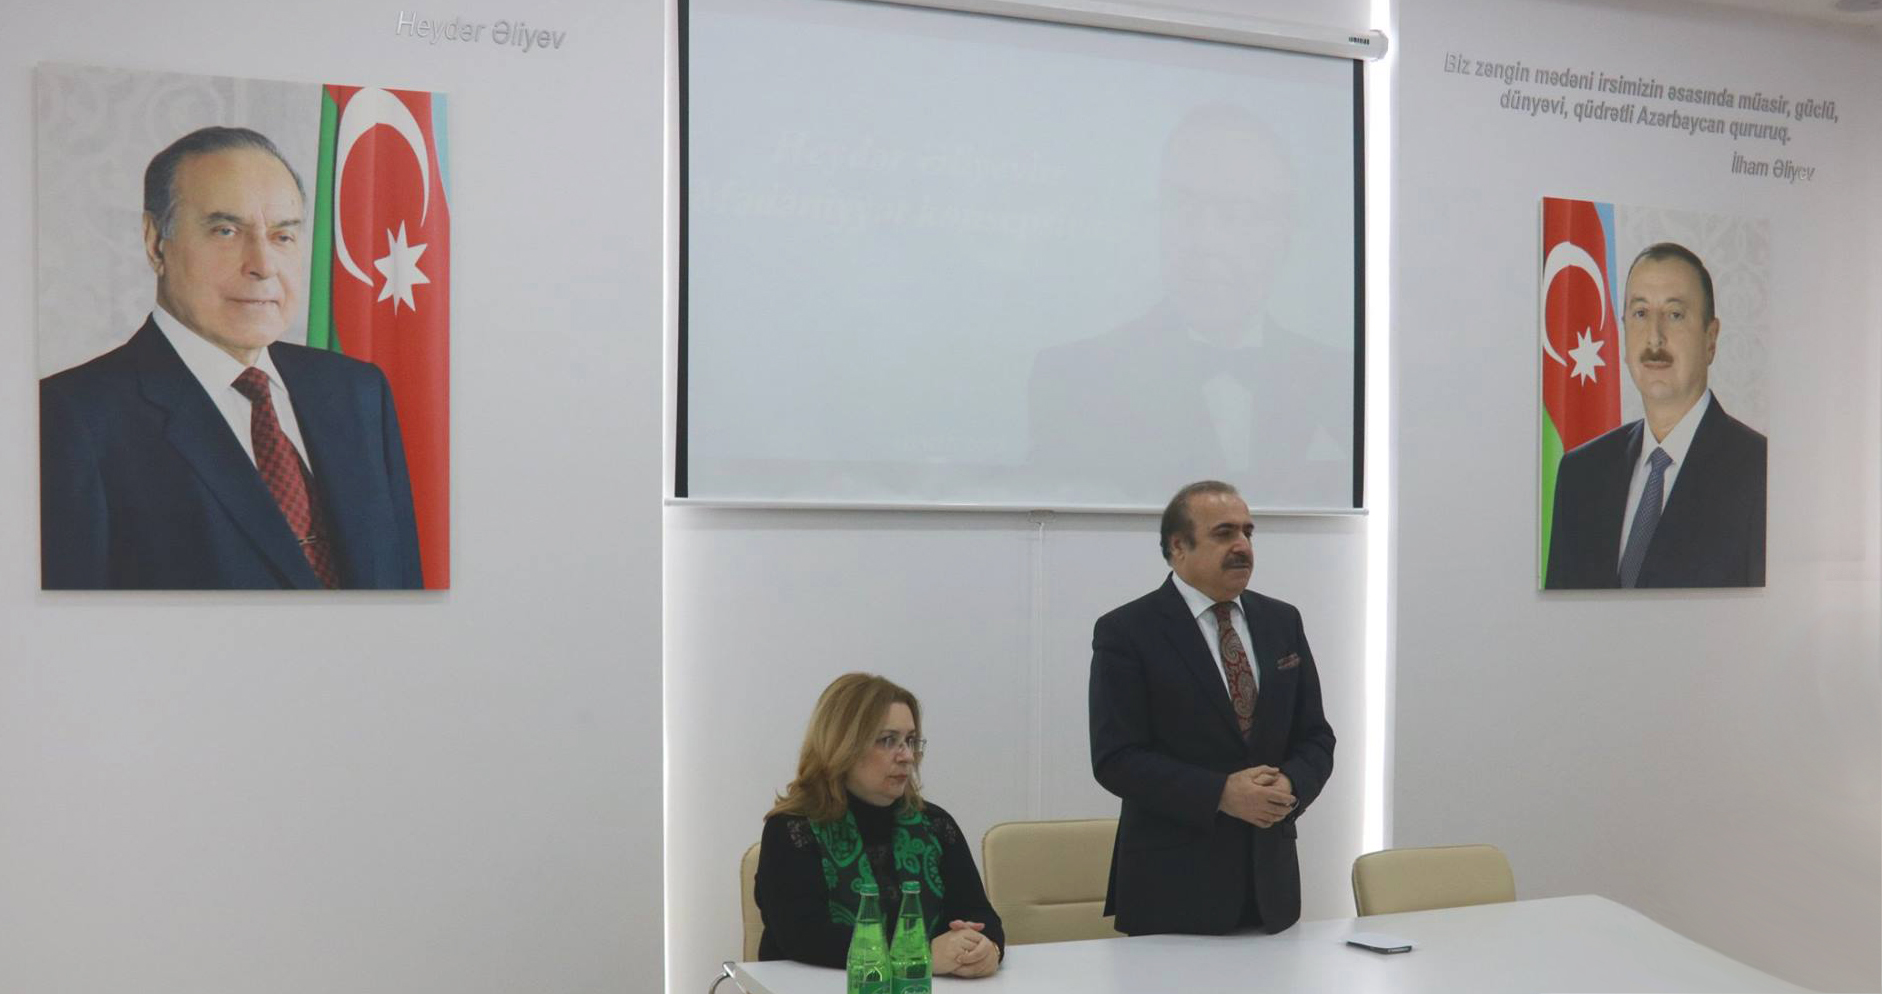 “Heydər Əliyevin mədəniyyət konsepsiyası” mövzusunda elmi seminar keçirilib